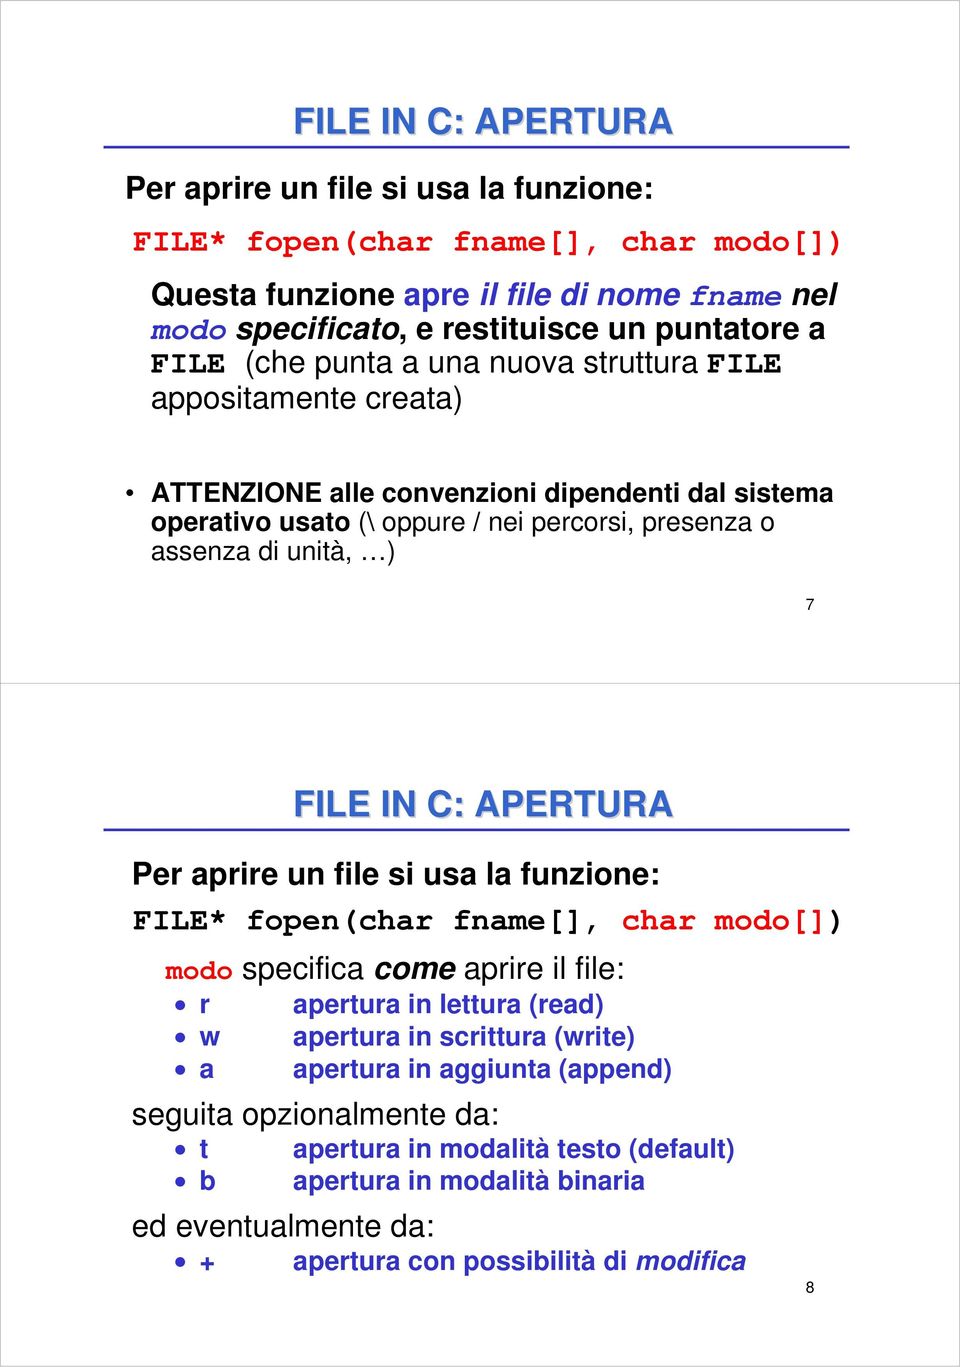 Per aprire un file si usa la funzione: FILE* fopen(char fname[], char modo[]) modo specifica come aprire il file: r w a apertura in lettura (read) apertura in scrittura (write) apertura in